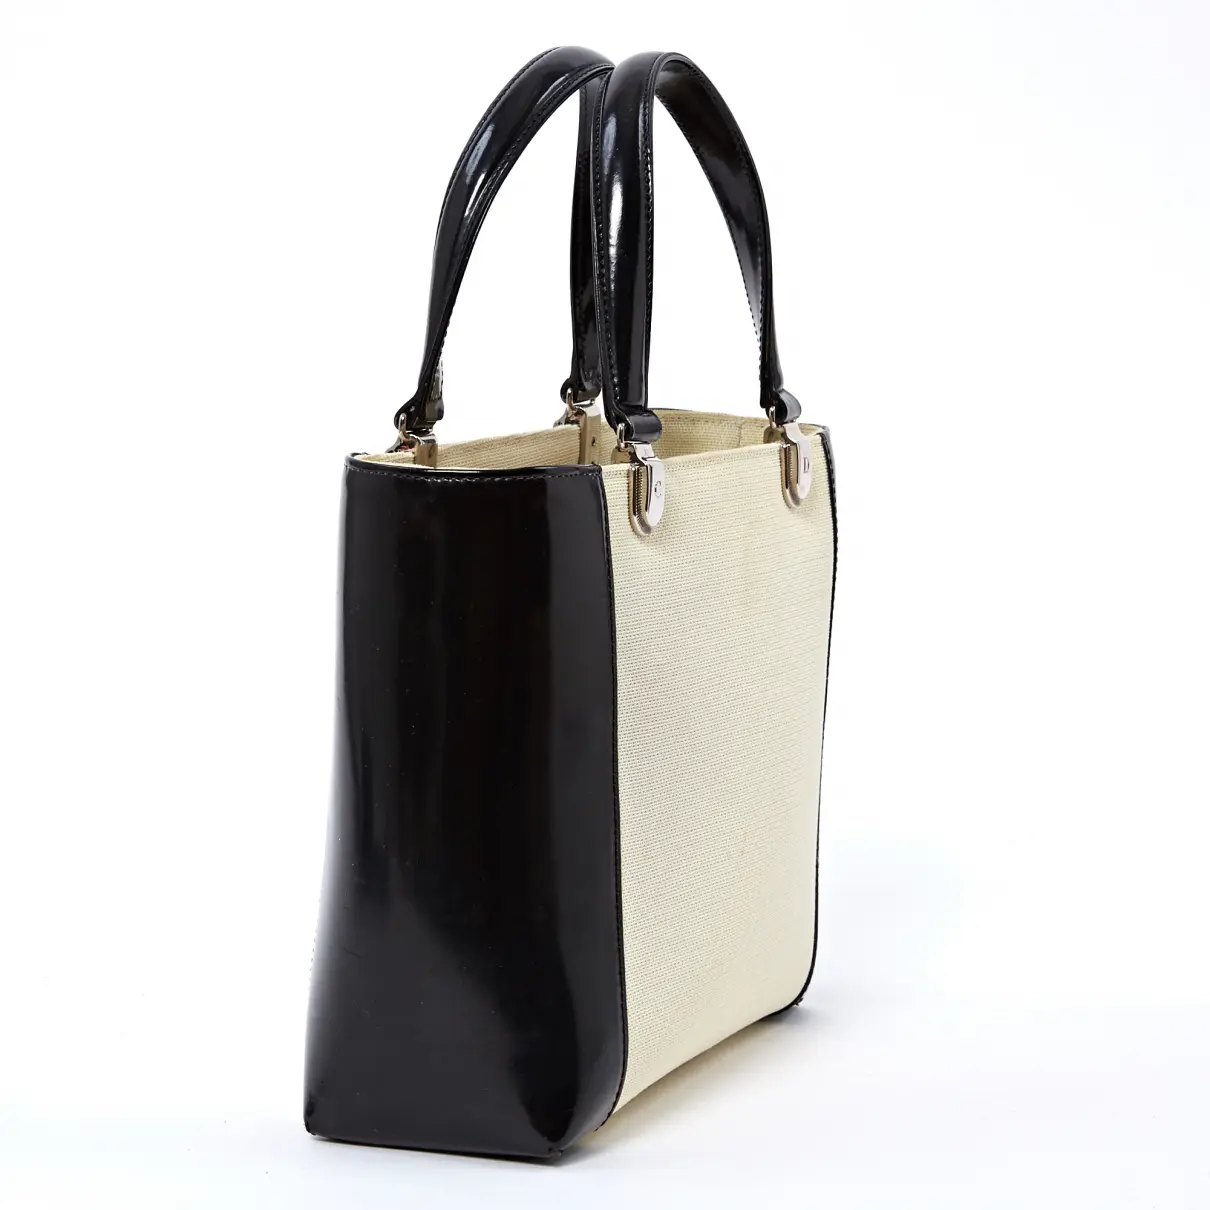 Dior Lady Dior cloth handbag for sale - Vintage